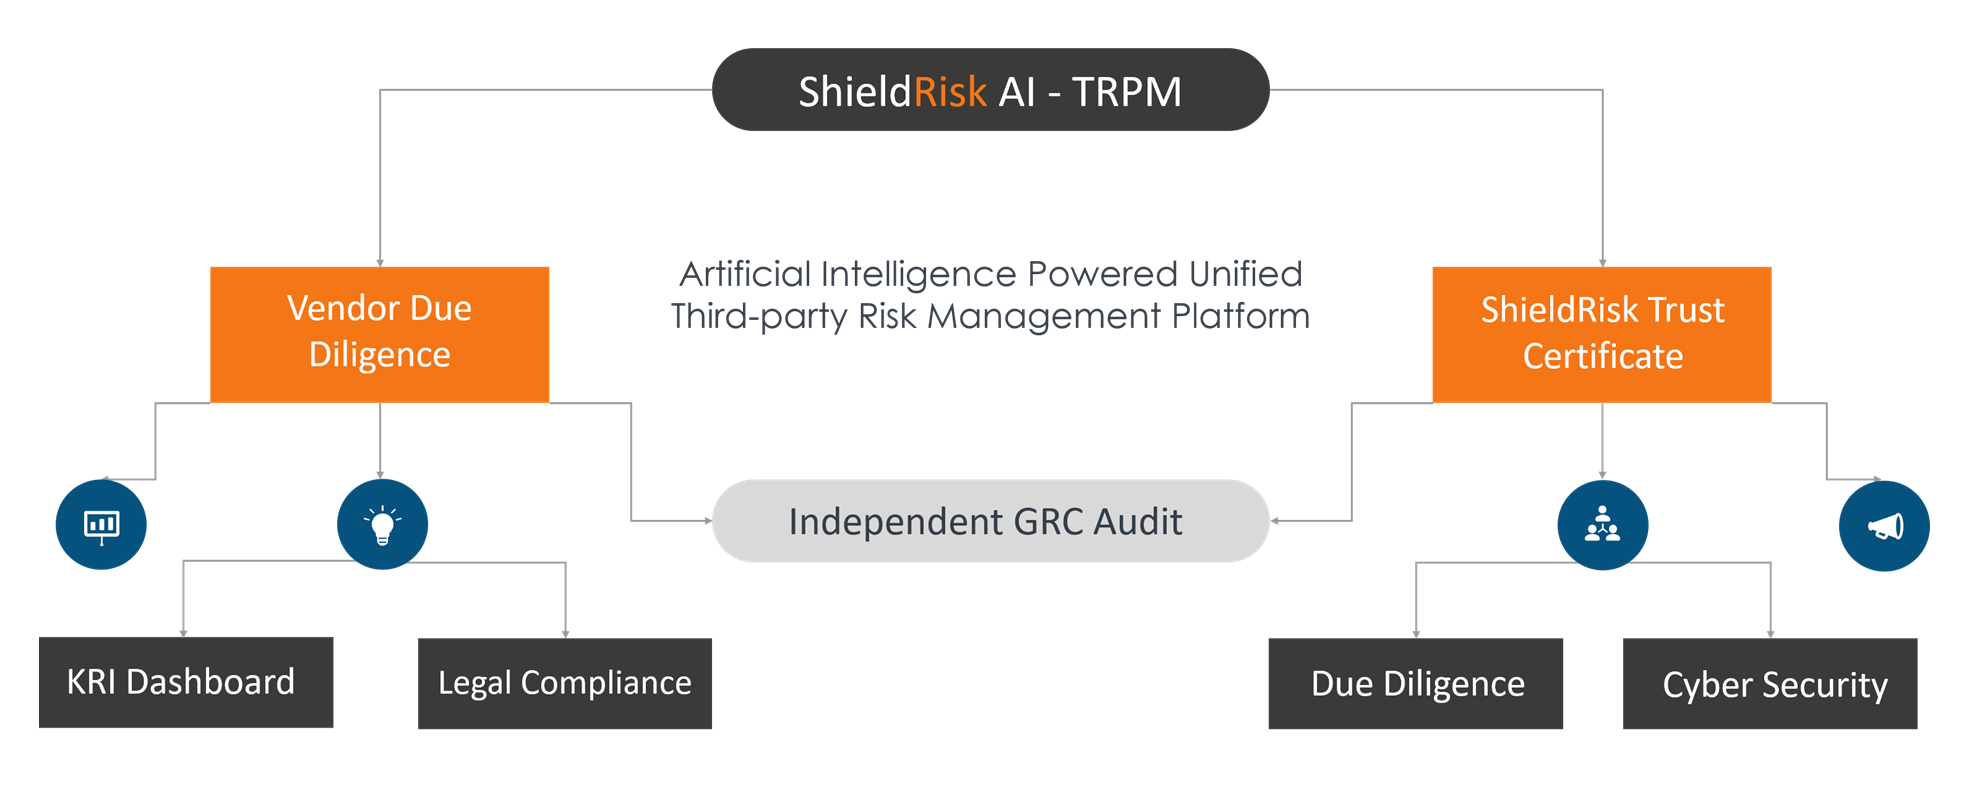 ShieldRisk TRPM Trust Certificate